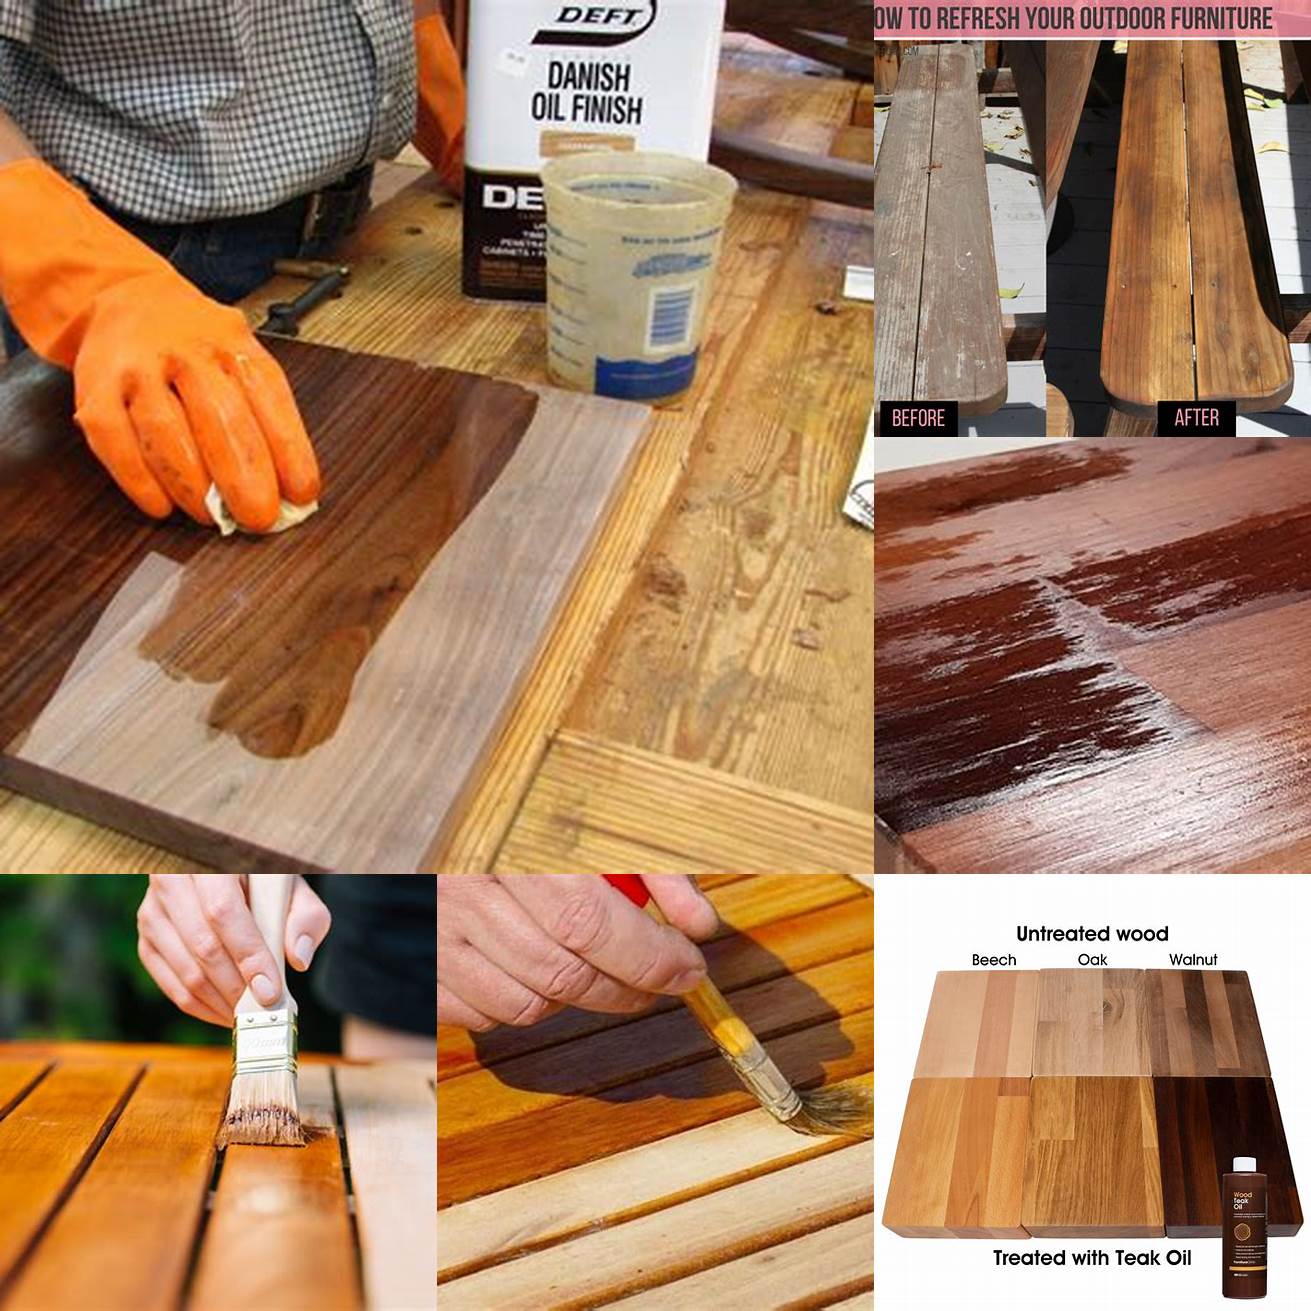 Wood surface before applying teak oil